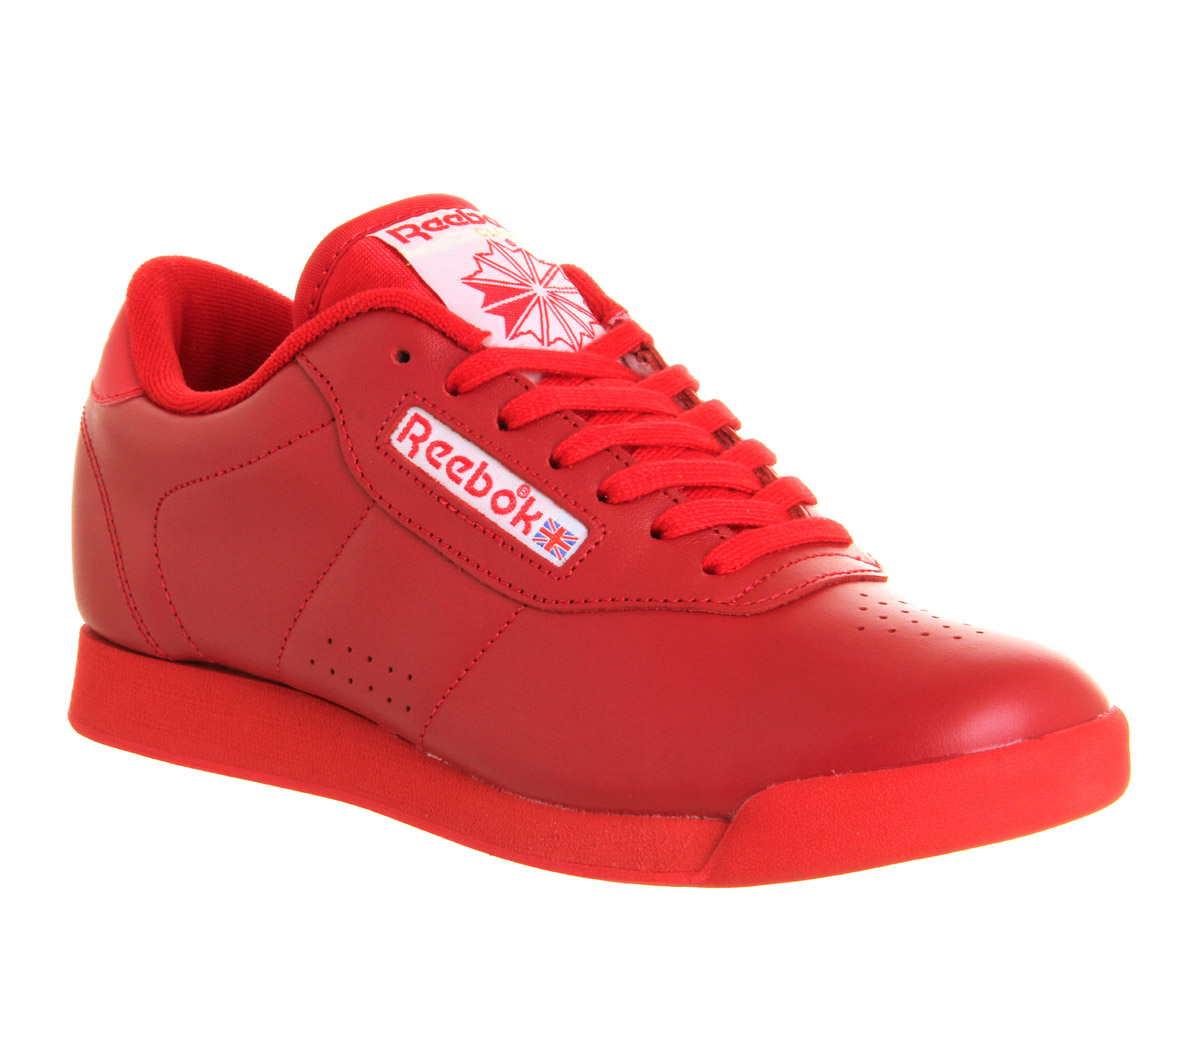 Red Reebok Princess Shoes Discount, 57% OFF | sportsregras.com